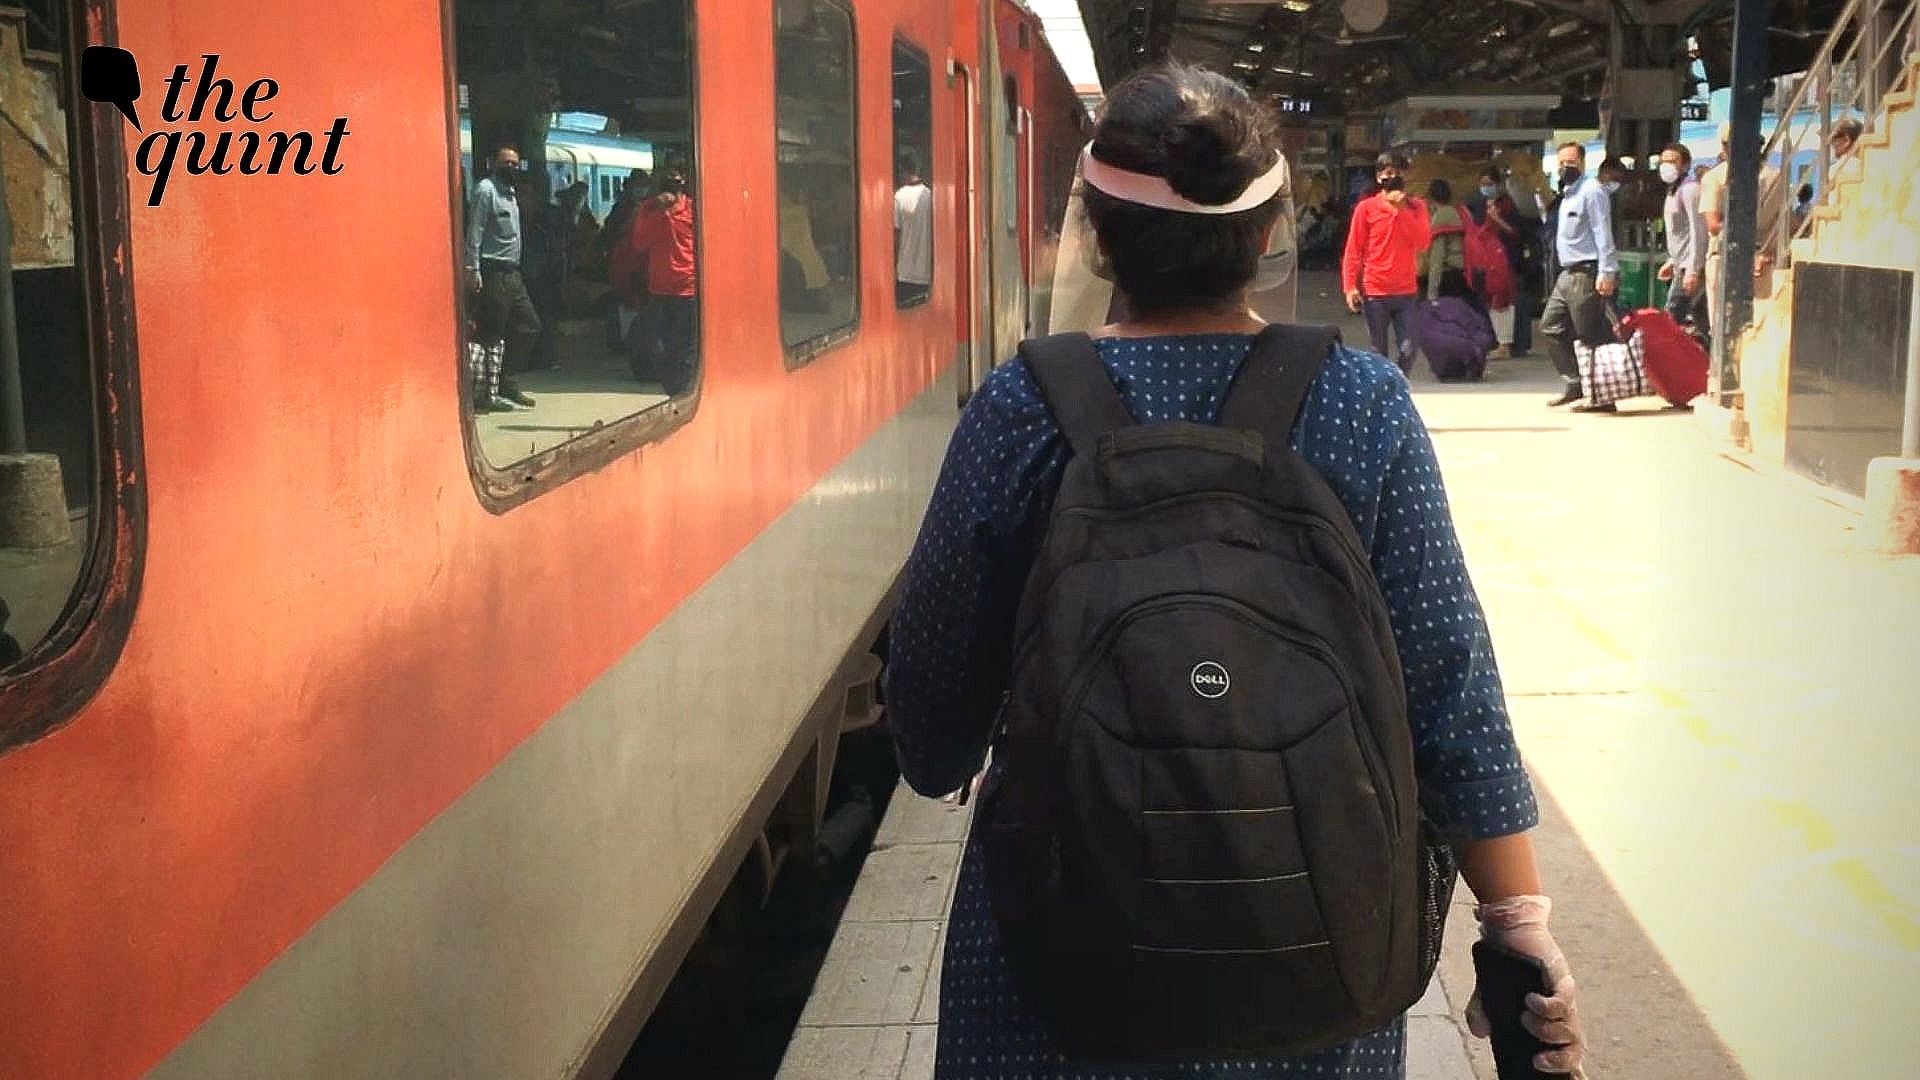 ट्रेनों के हालातों का जायजा लेने के लिए मैंने दिल्ली से आगरा तक ऐसी ही एक ट्रेन में सफर किया.